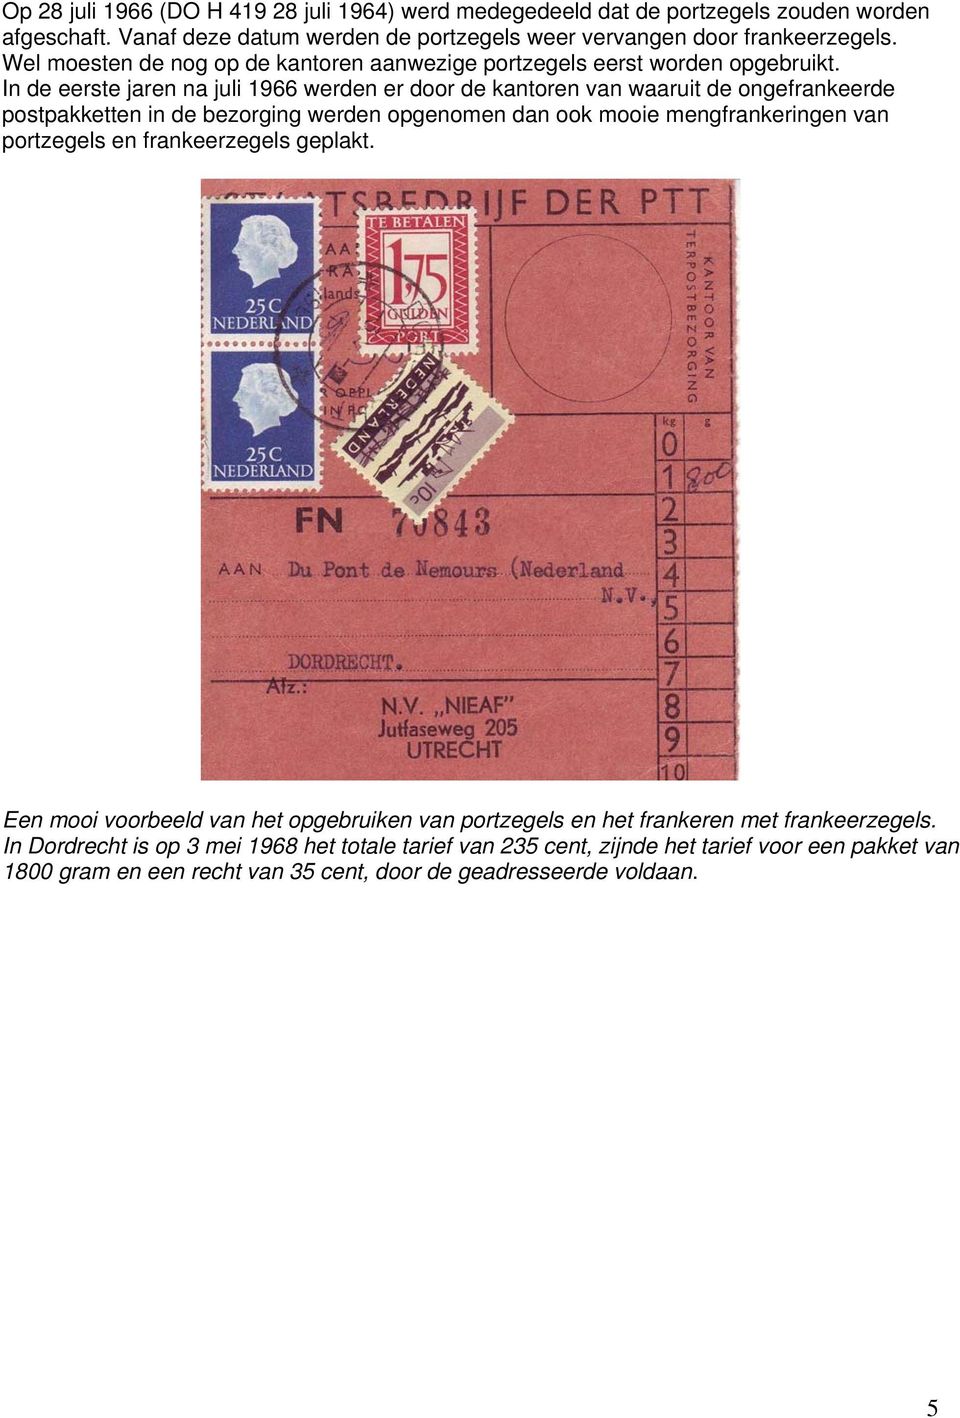 In de eerste jaren na juli 1966 werden er door de kantoren van waaruit de ongefrankeerde postpakketten in de bezorging werden opgenomen dan ook mooie mengfrankeringen van